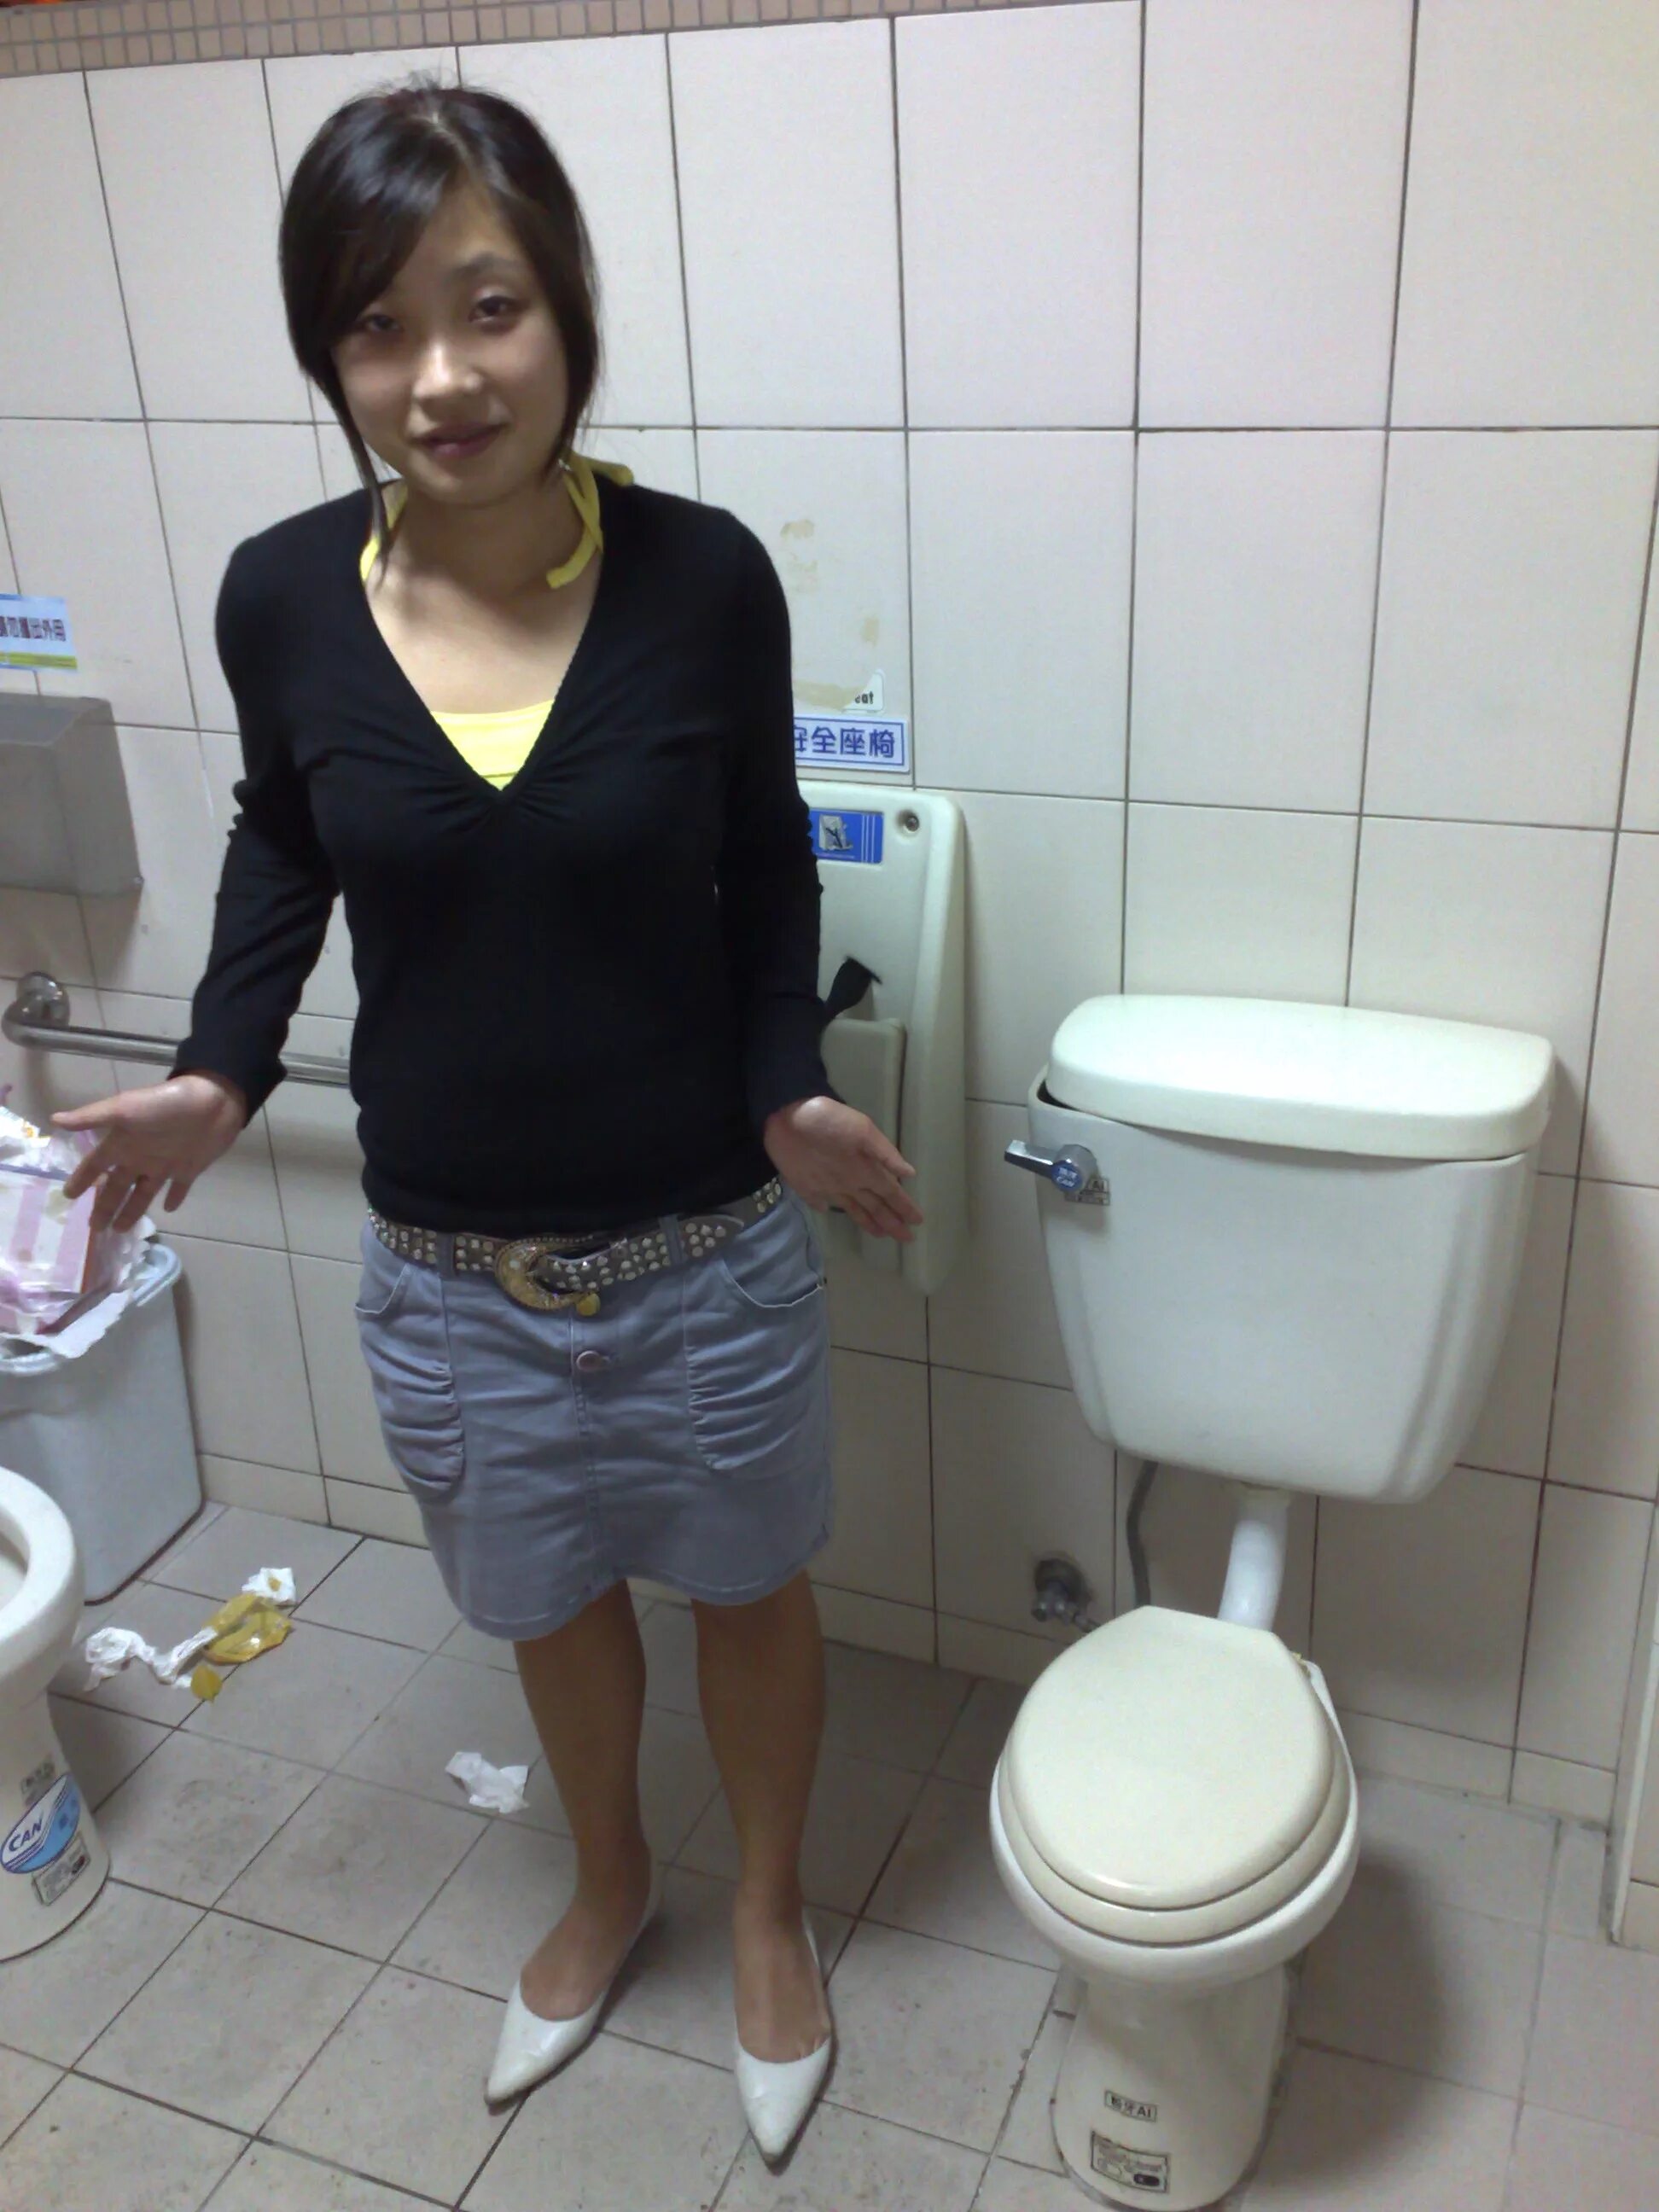 Девочка в туалете. Туалет азиатского типа. Красивая девушка в туалете. Азиатский унитаз. Девушки в туалете на улице